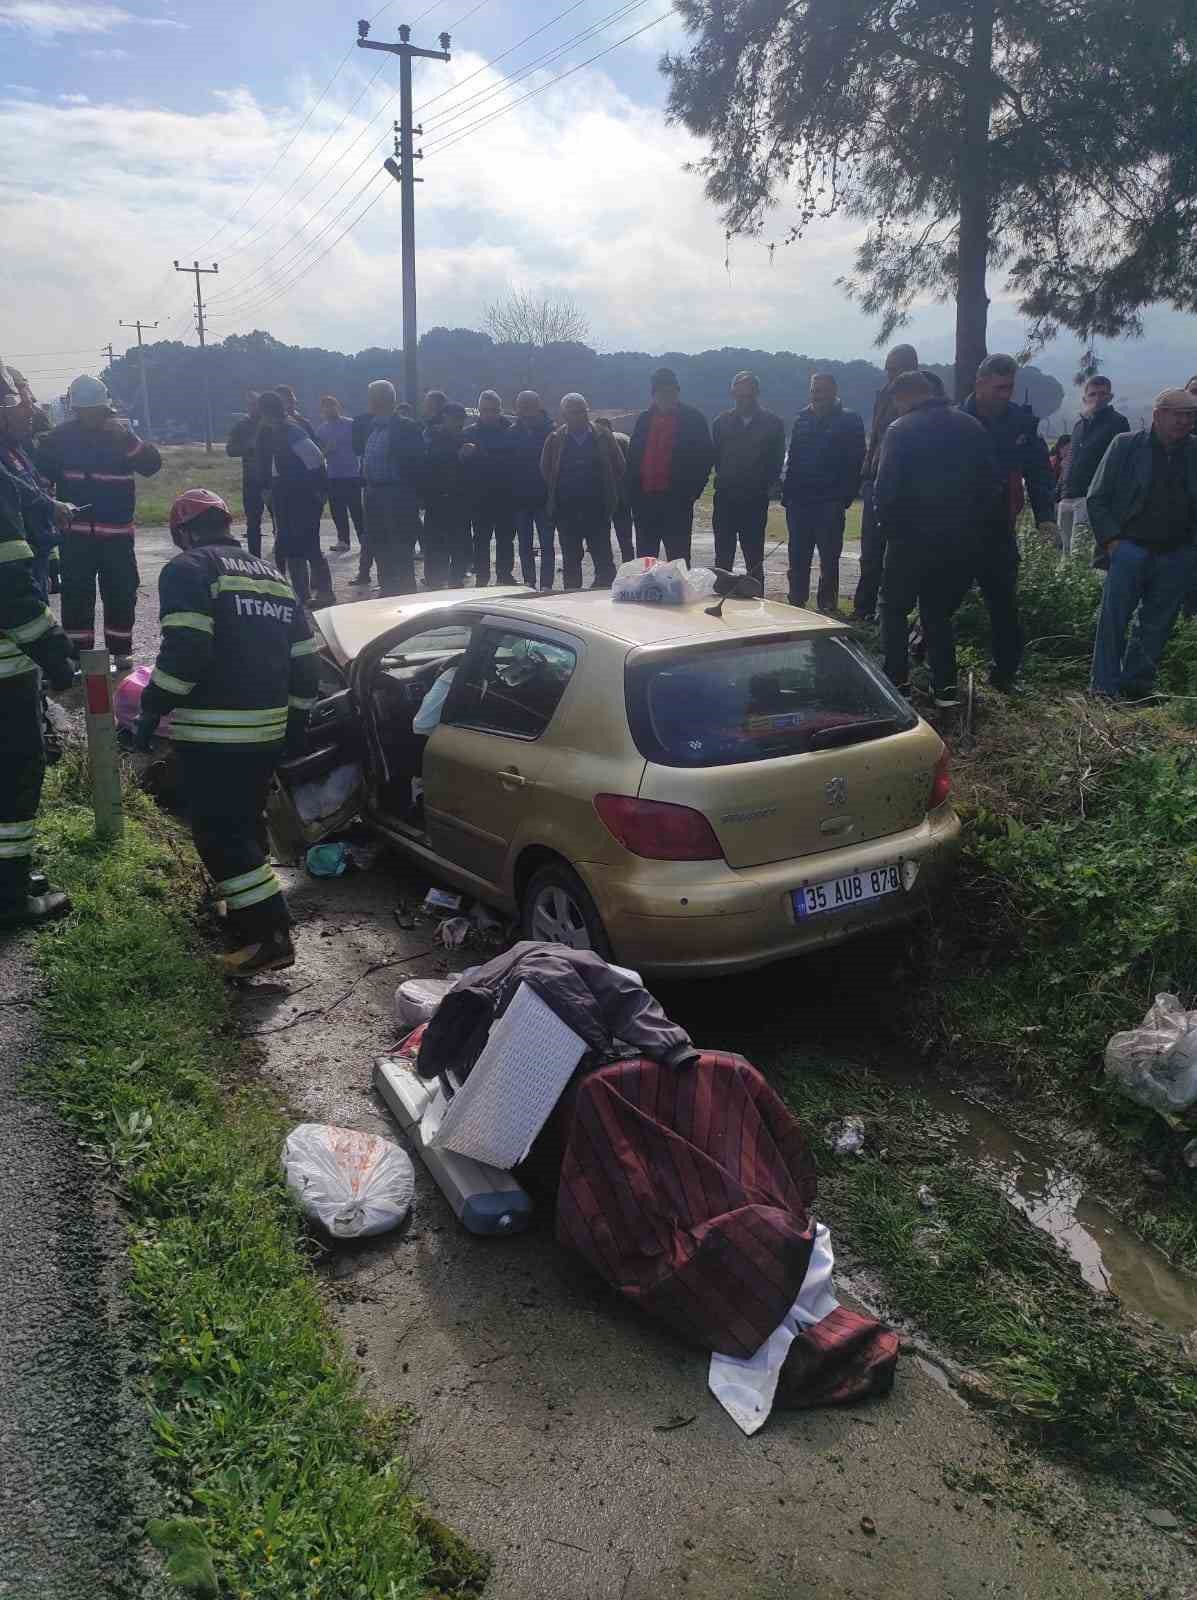 Manisa’da otomobil menfeze çarptı: 2 ağır yaralı
